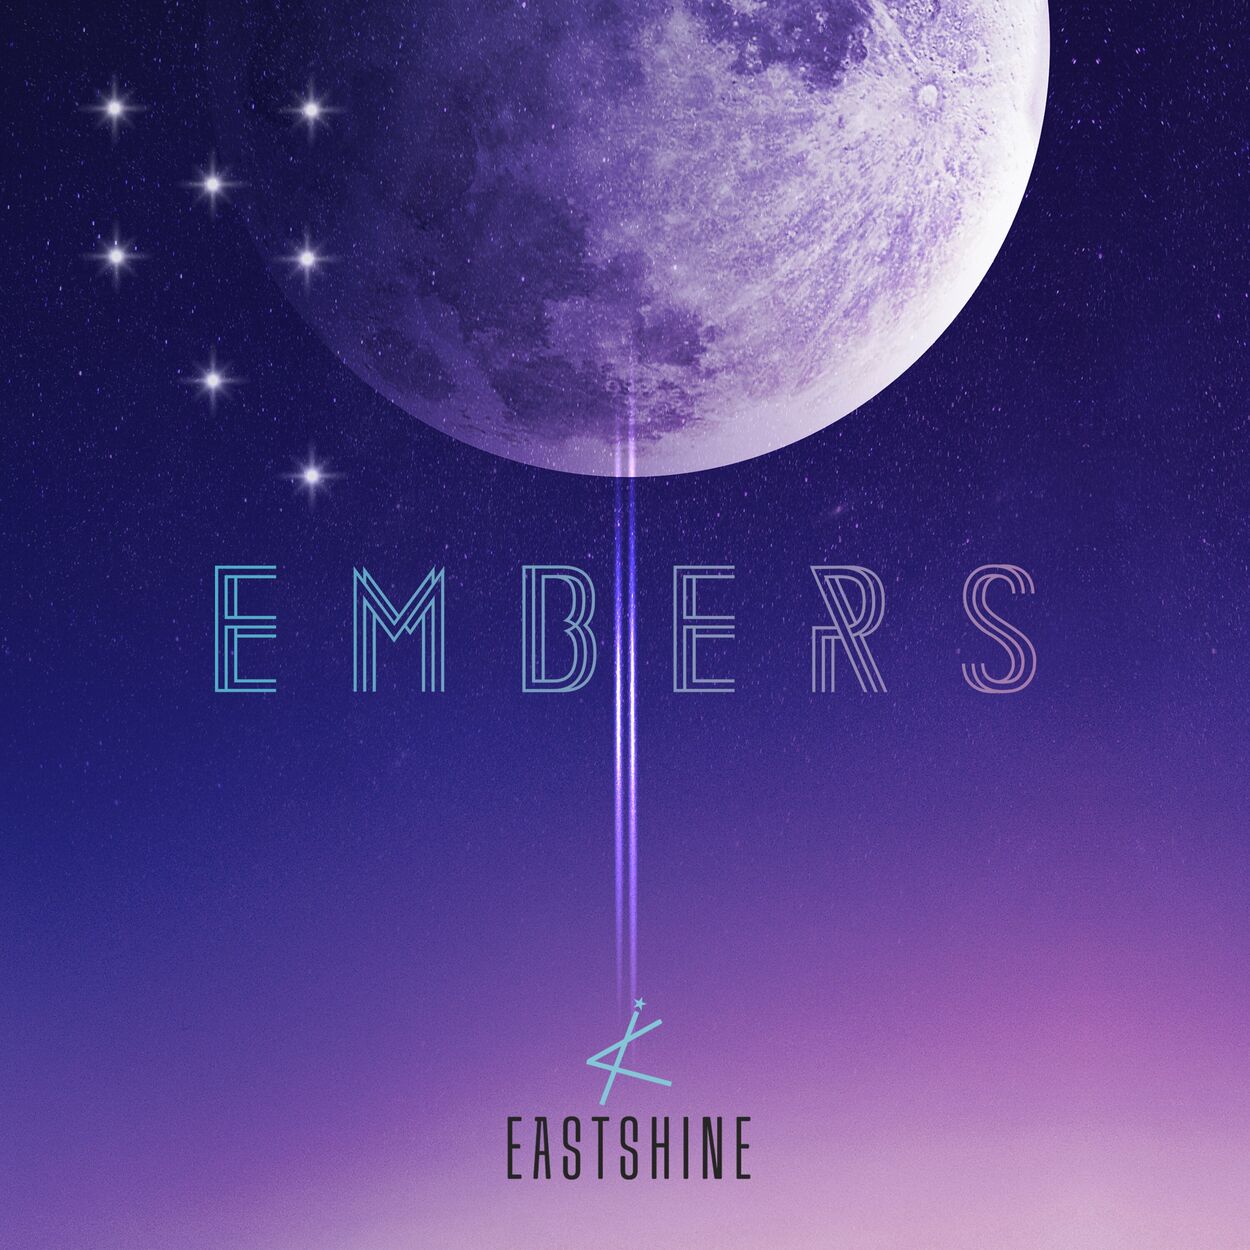 EASTSHINE – EMBERS – EP